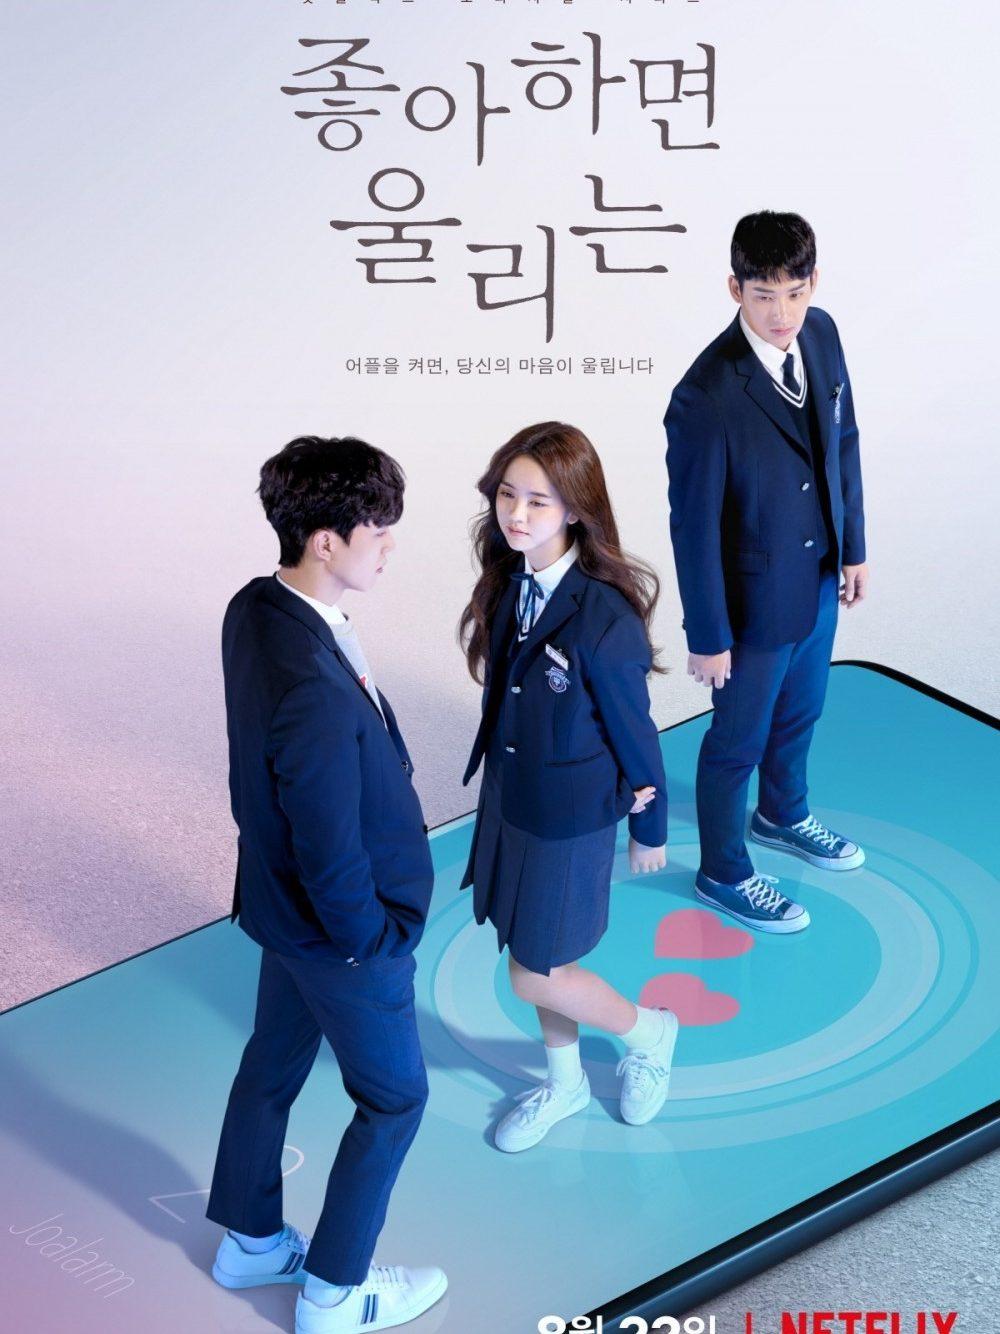 Chuông báo tình yêu 1, 2 - Phim tâm lý tình cảm Hàn Quốc học đường 2019